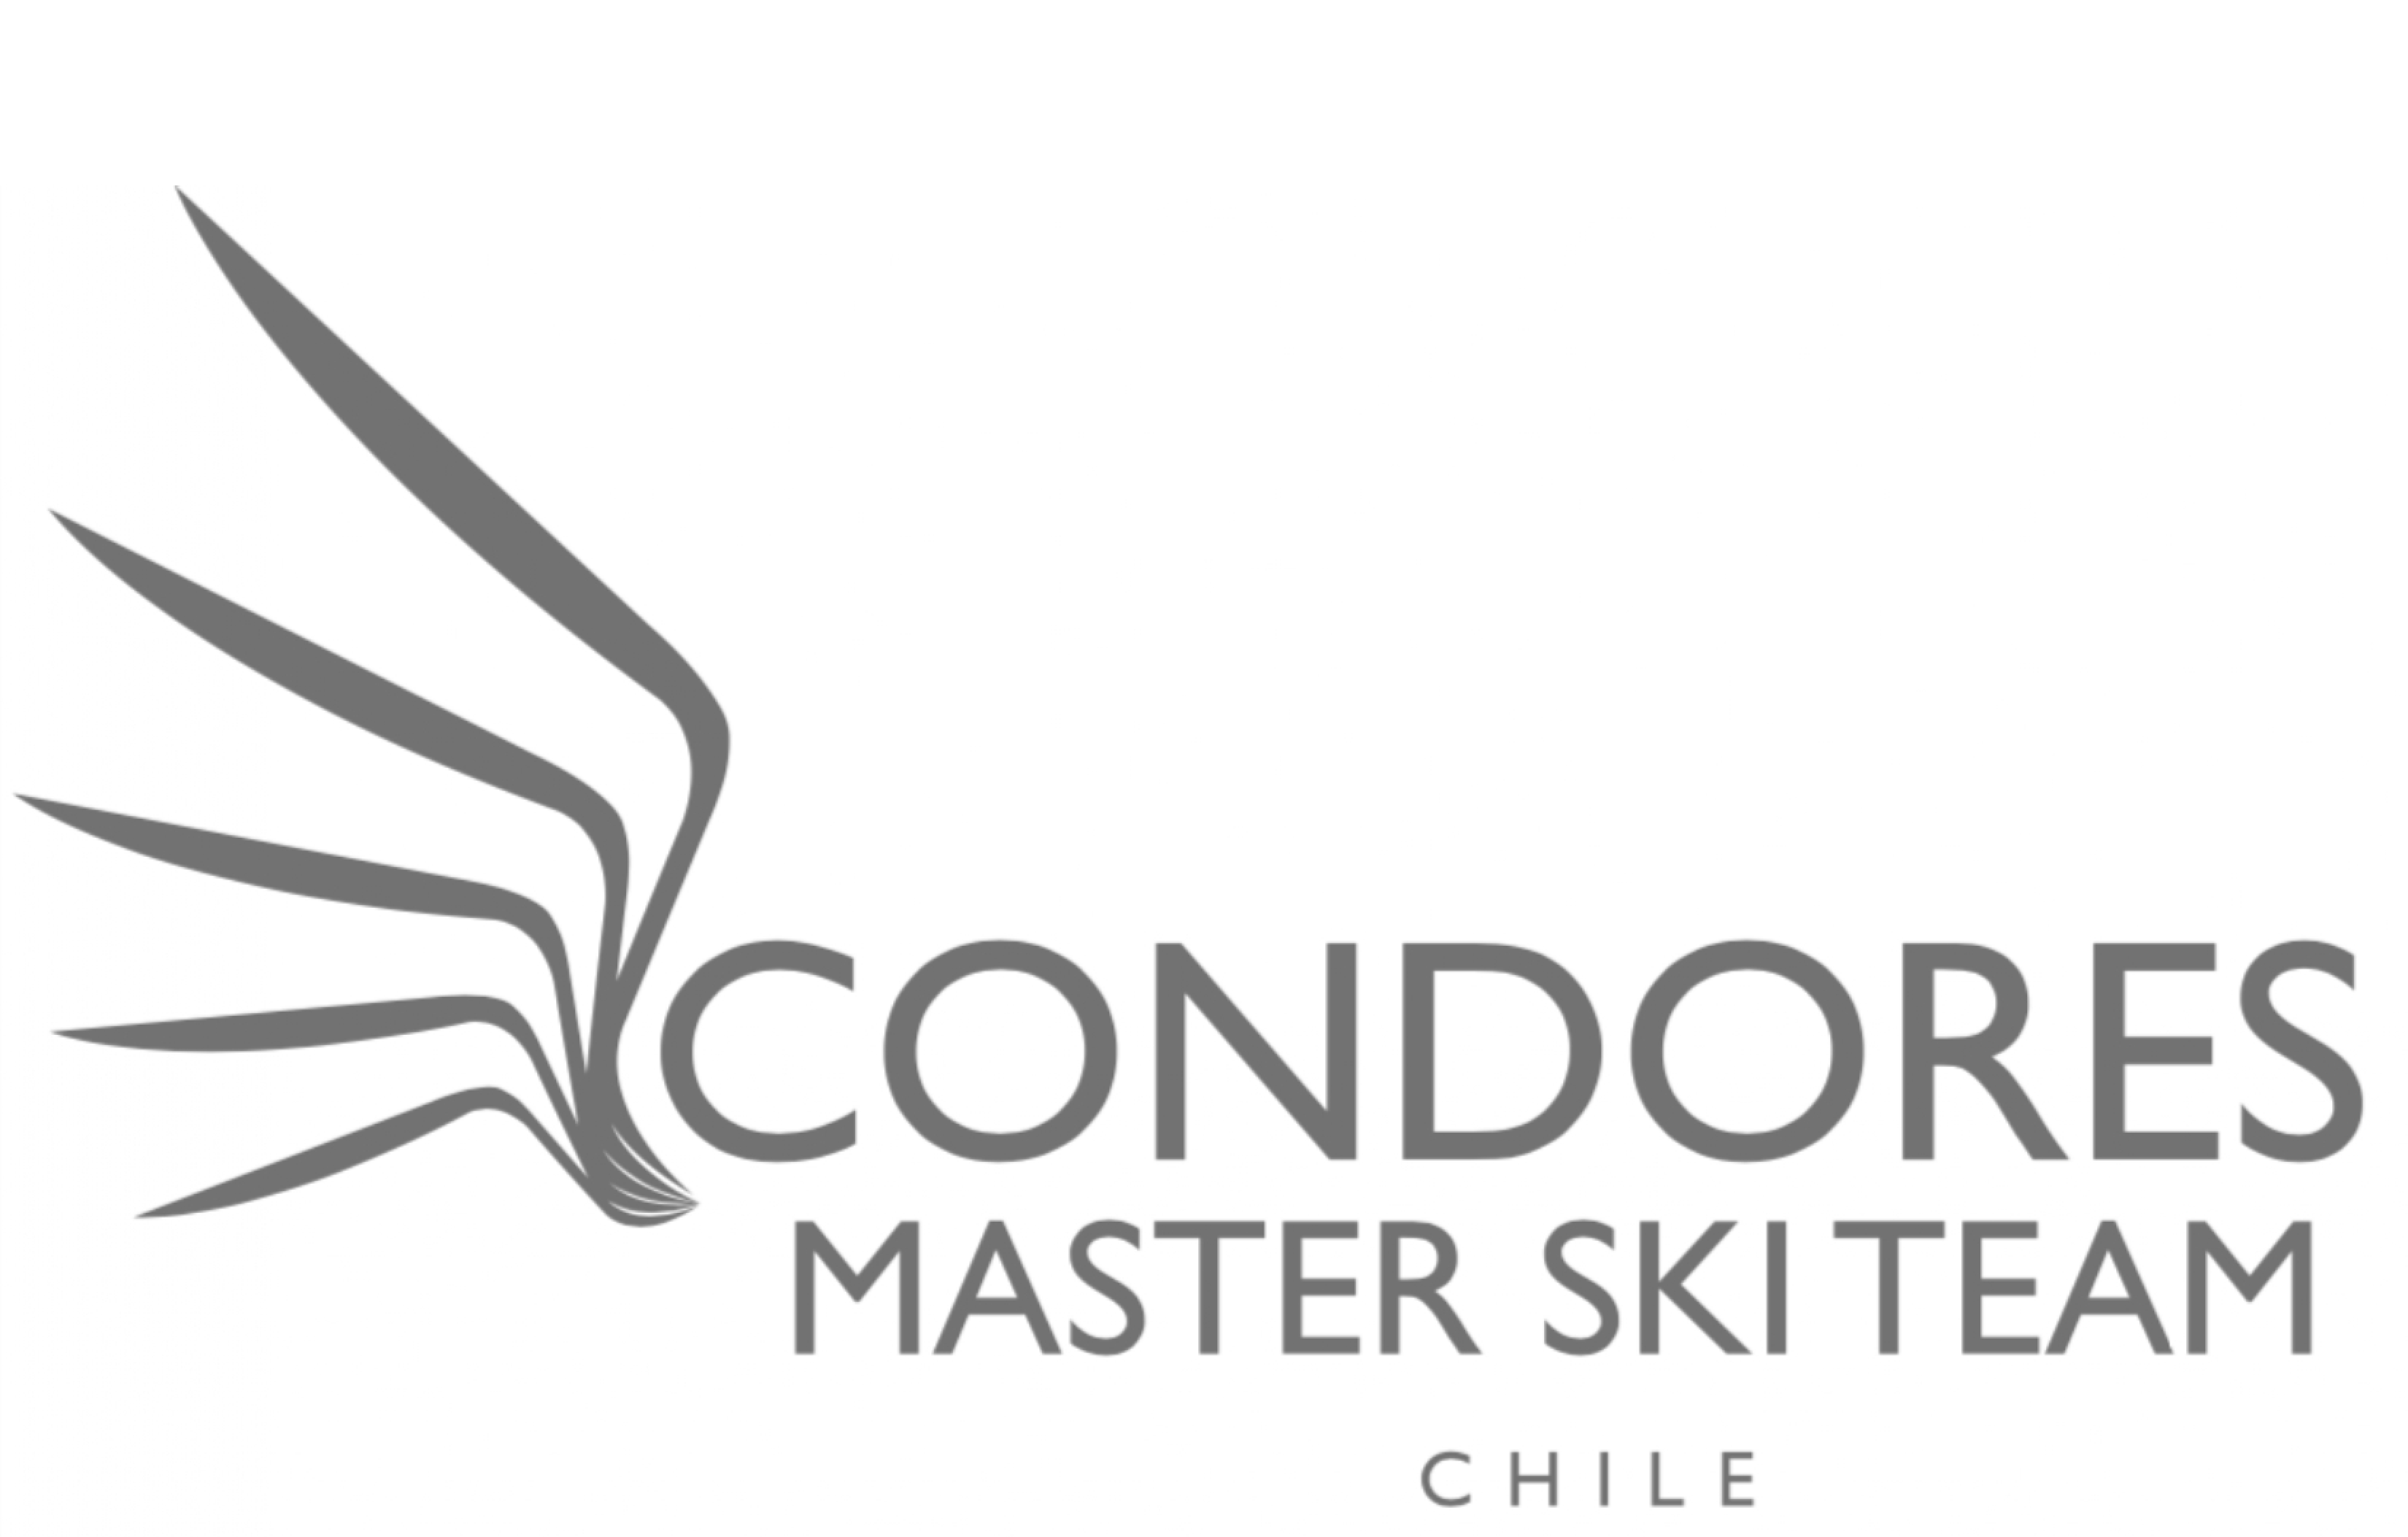 Condores Master Ski Team